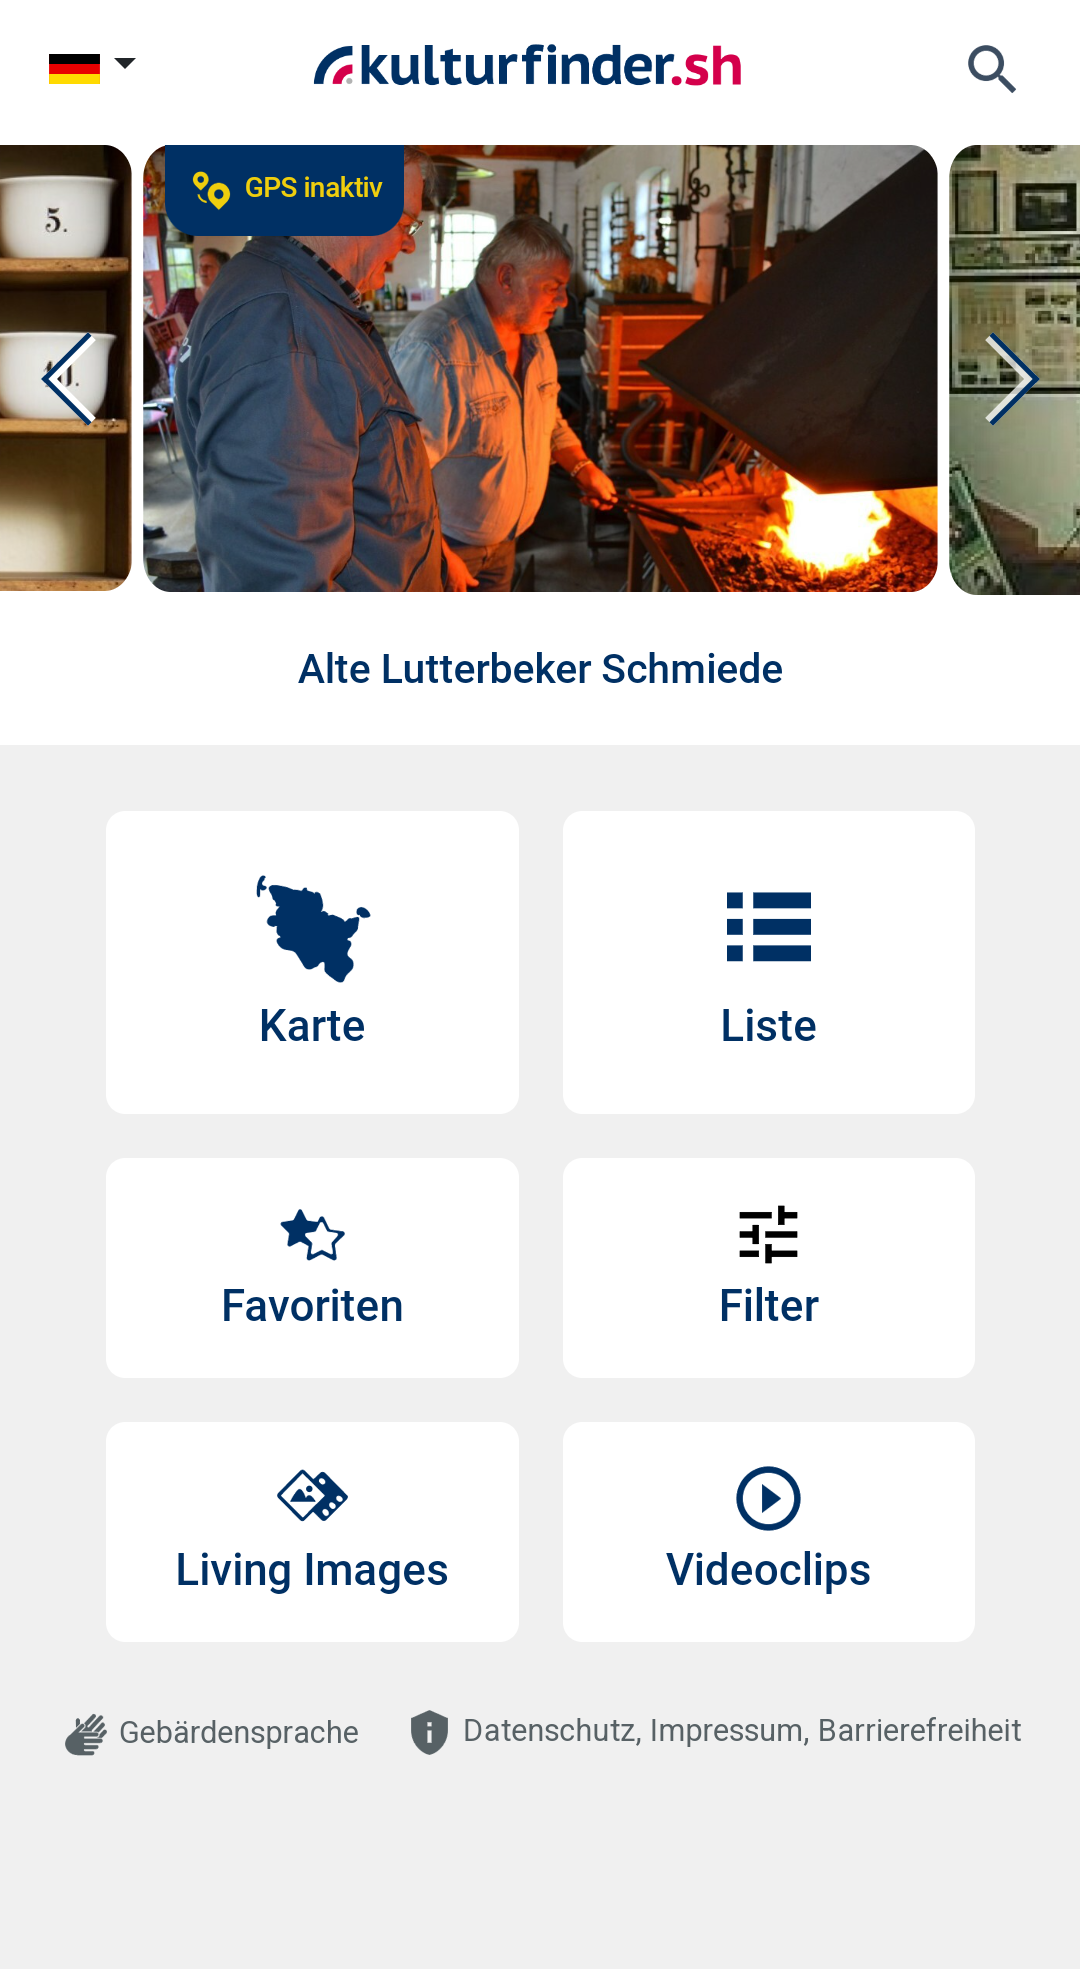 Startseite der Kulturfinder.sh App. Mit Vorschaubild der Kulturinstitution und den grafischen Links zu Karte, Liste, Favoriten, Filter, Living Images und Videoclips.